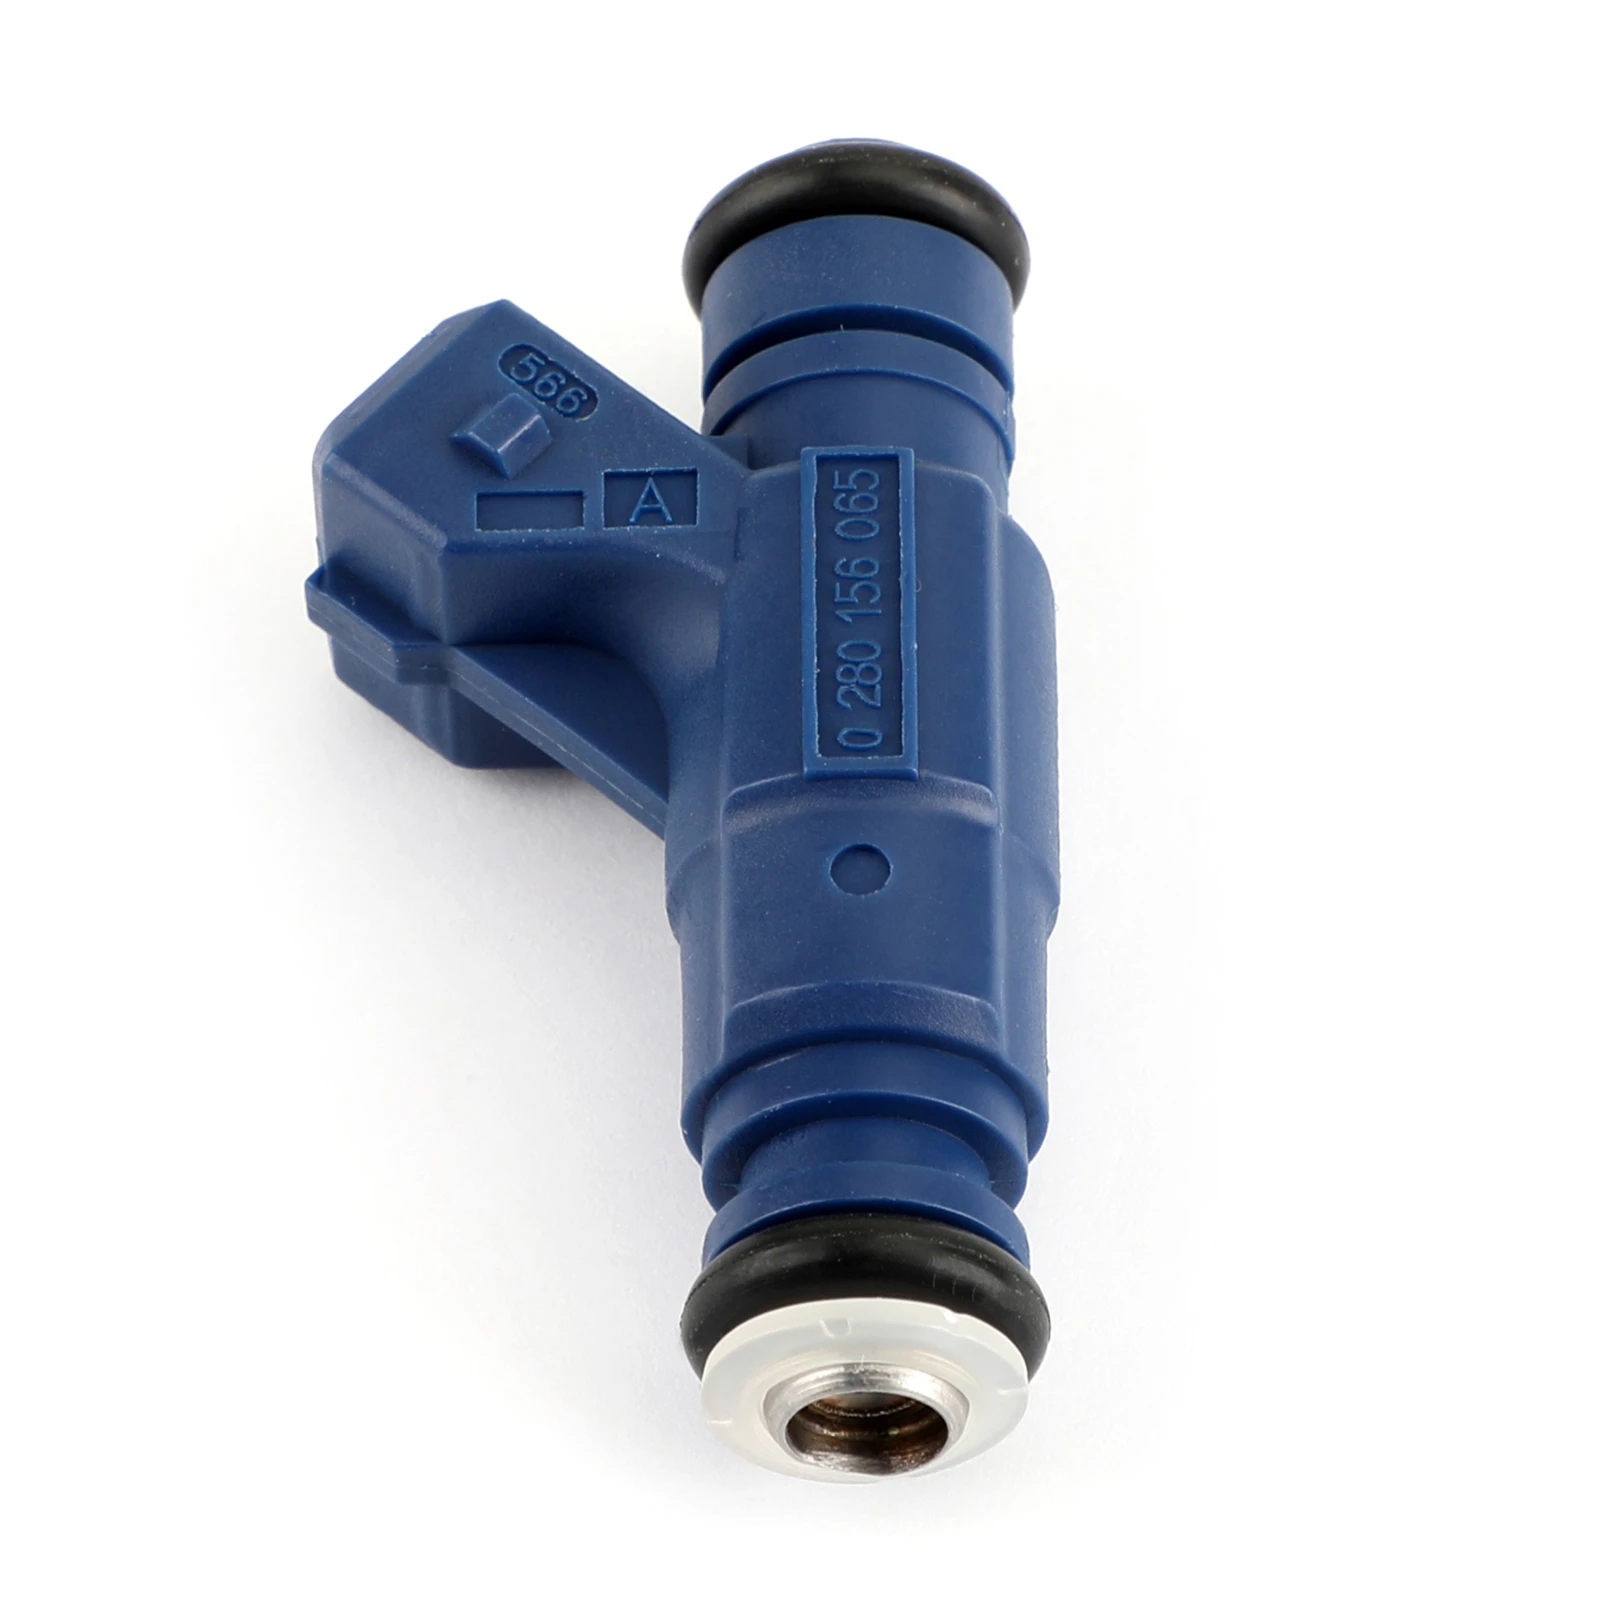 

Areyourshop 4PCS Fuel Injectors 0280156065 For Audi A4 Quattro for VW Passat 1.8L 06B133551M 340cc, Blue